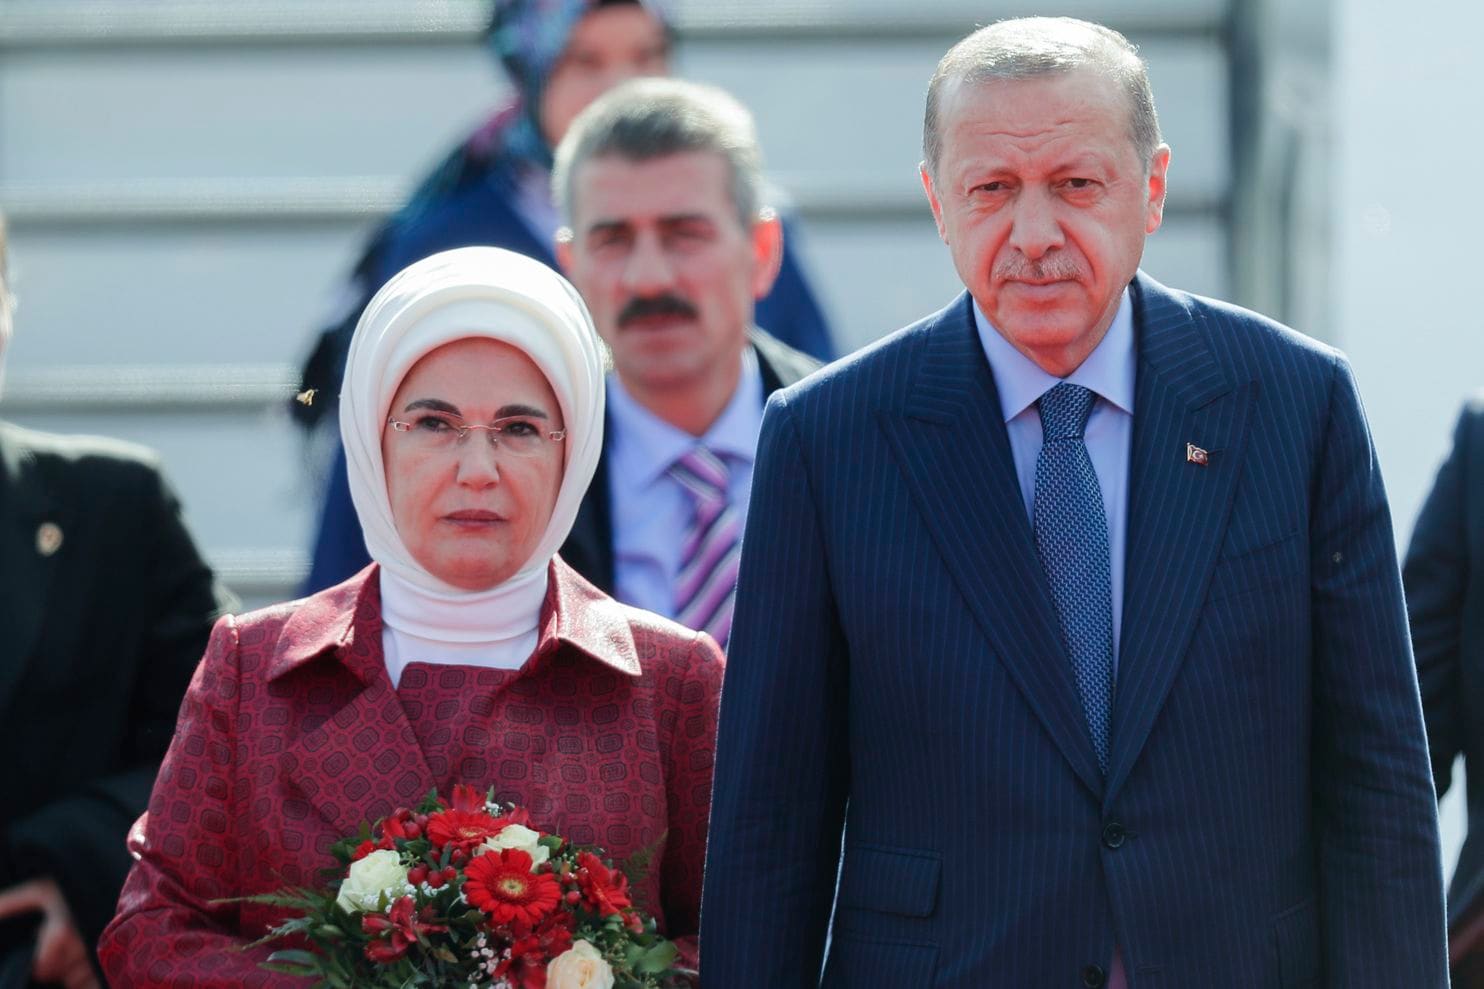 Ο Δημοσθένης Δαββέτας εντοπίζει την αχίλλειο πτέρνα του Ταγίπ Ερντογάν στην οικονομία. Η οπισθοδρόμηση είναι μπροστά και όπως φαίνεται χαλά τα σχέδια του “Σουλτάνου” να επιβάλλει στην Τουρκία, την Ισλαμική Δημοκρατορία. new deal